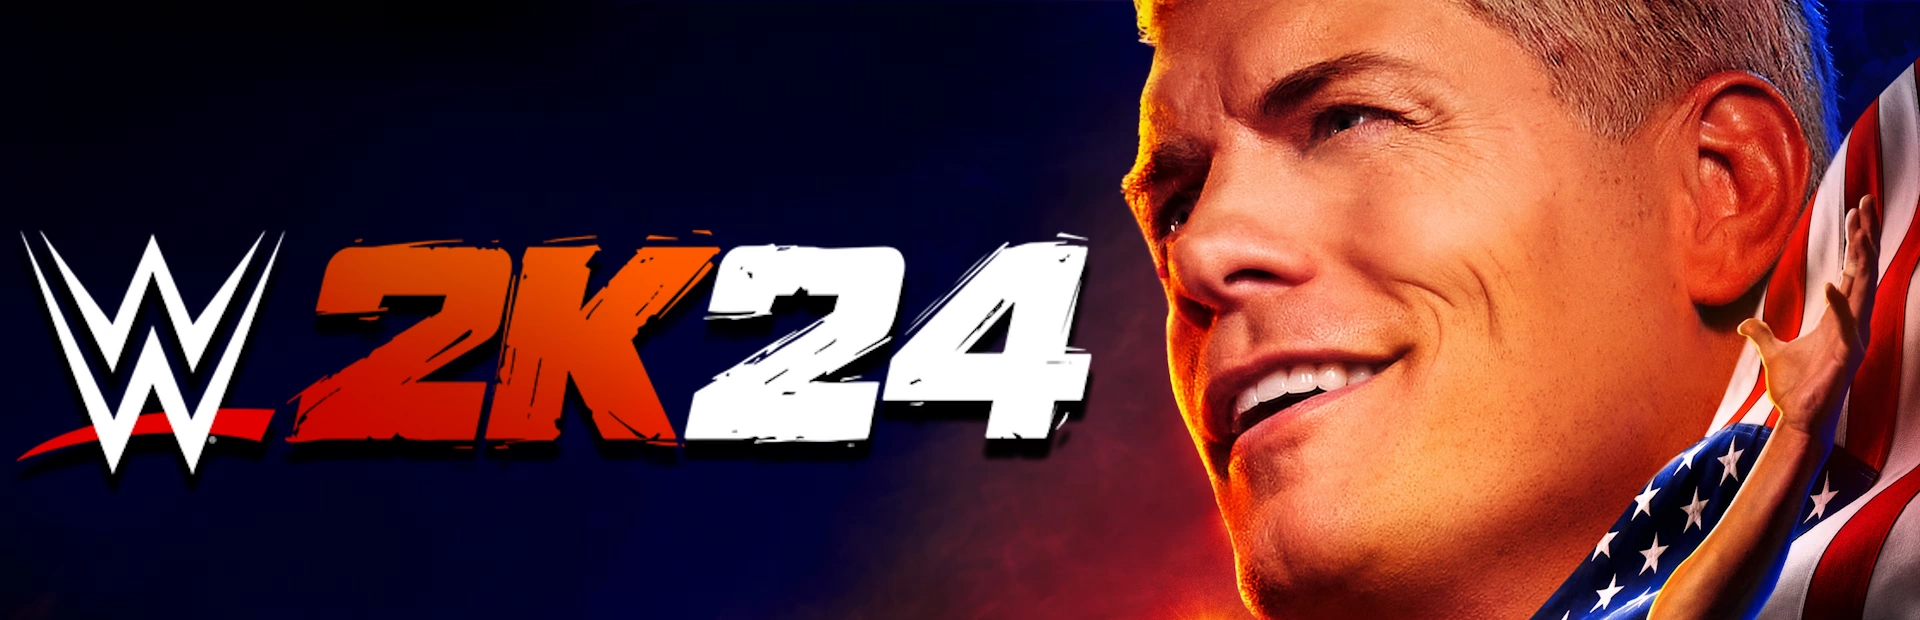 دانلود بازی WWE 2K24 برای کامپیوتر | گیمباتو